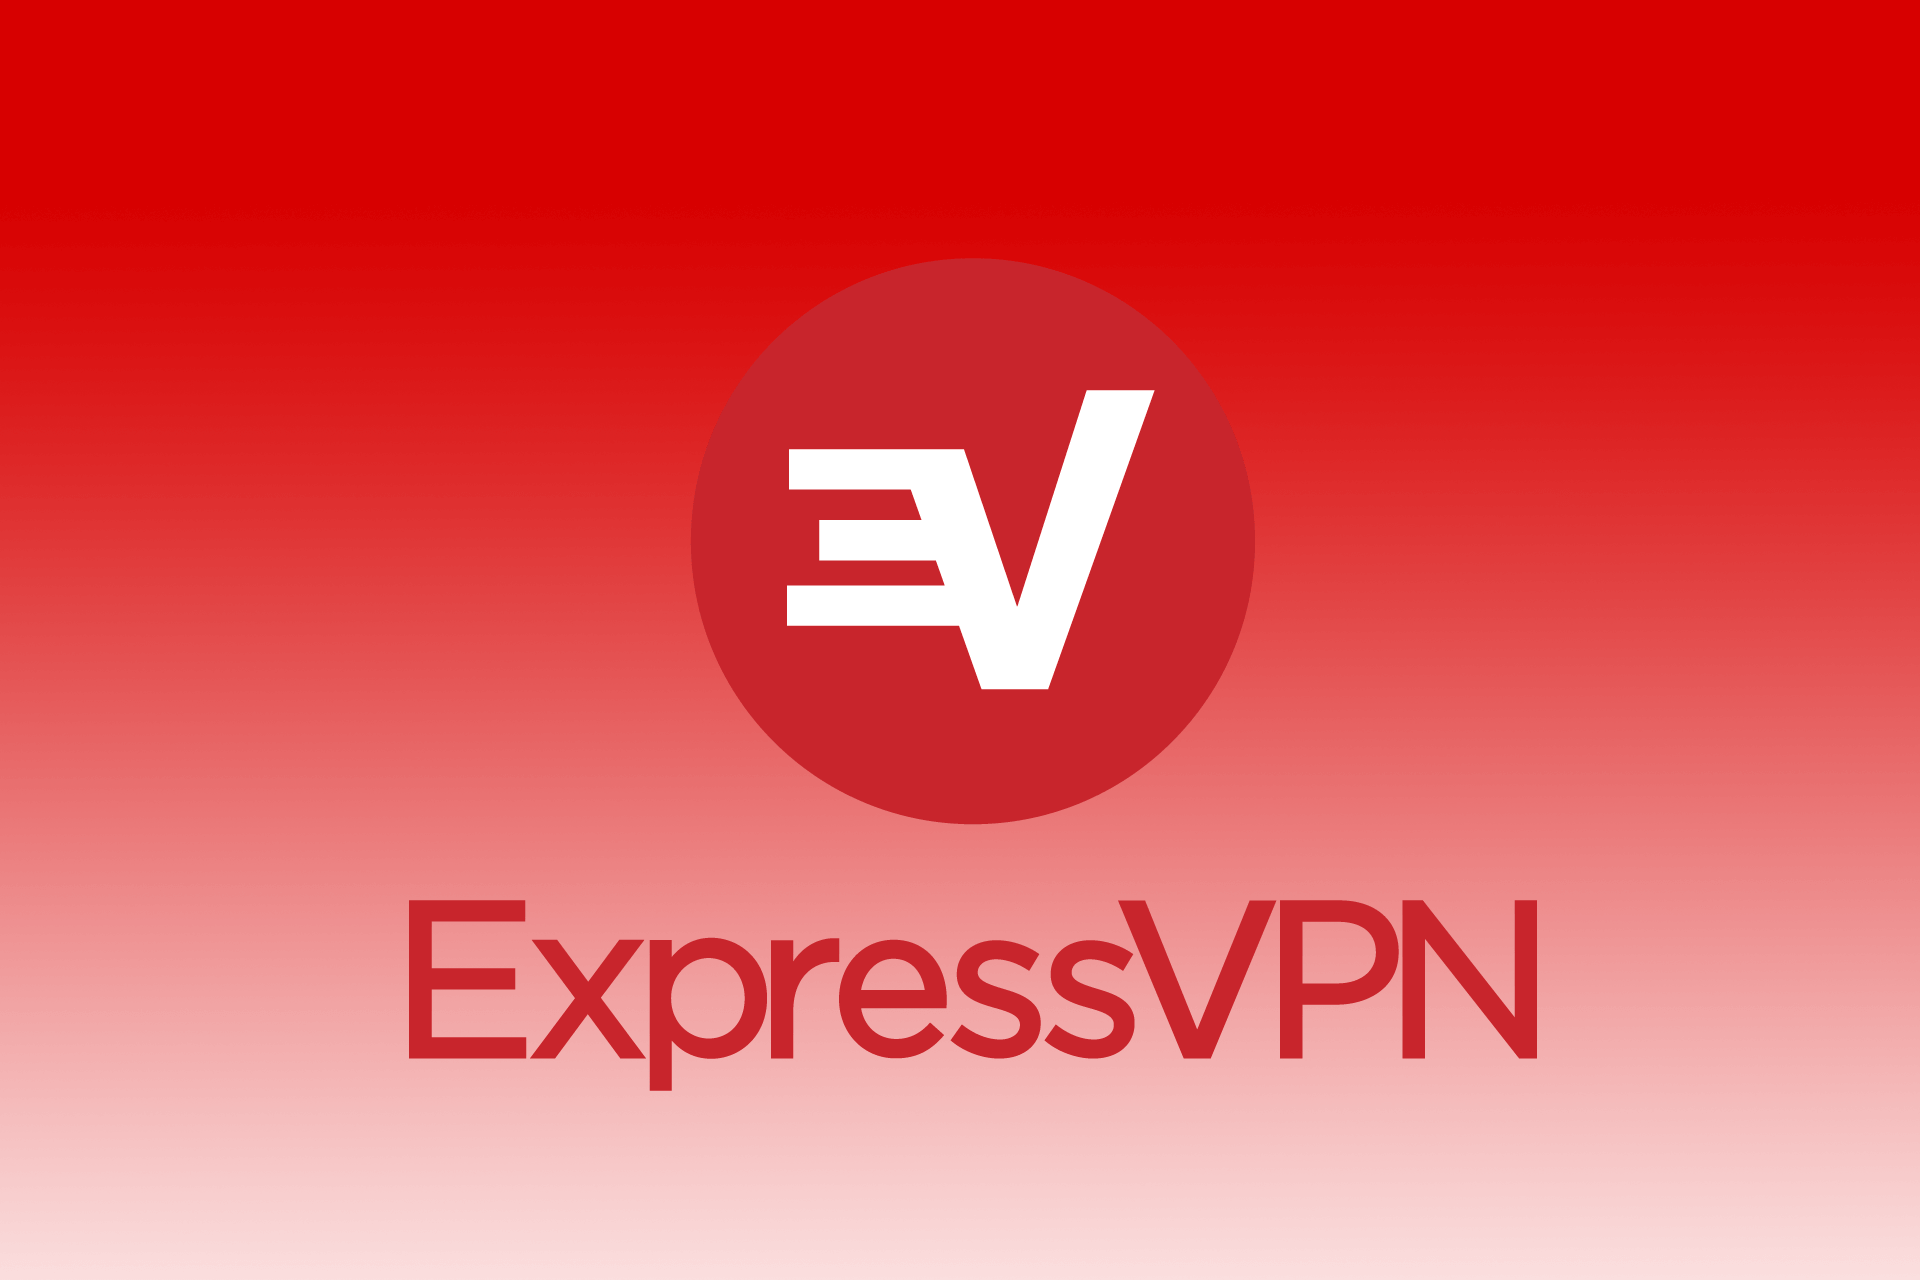 Express Vpn